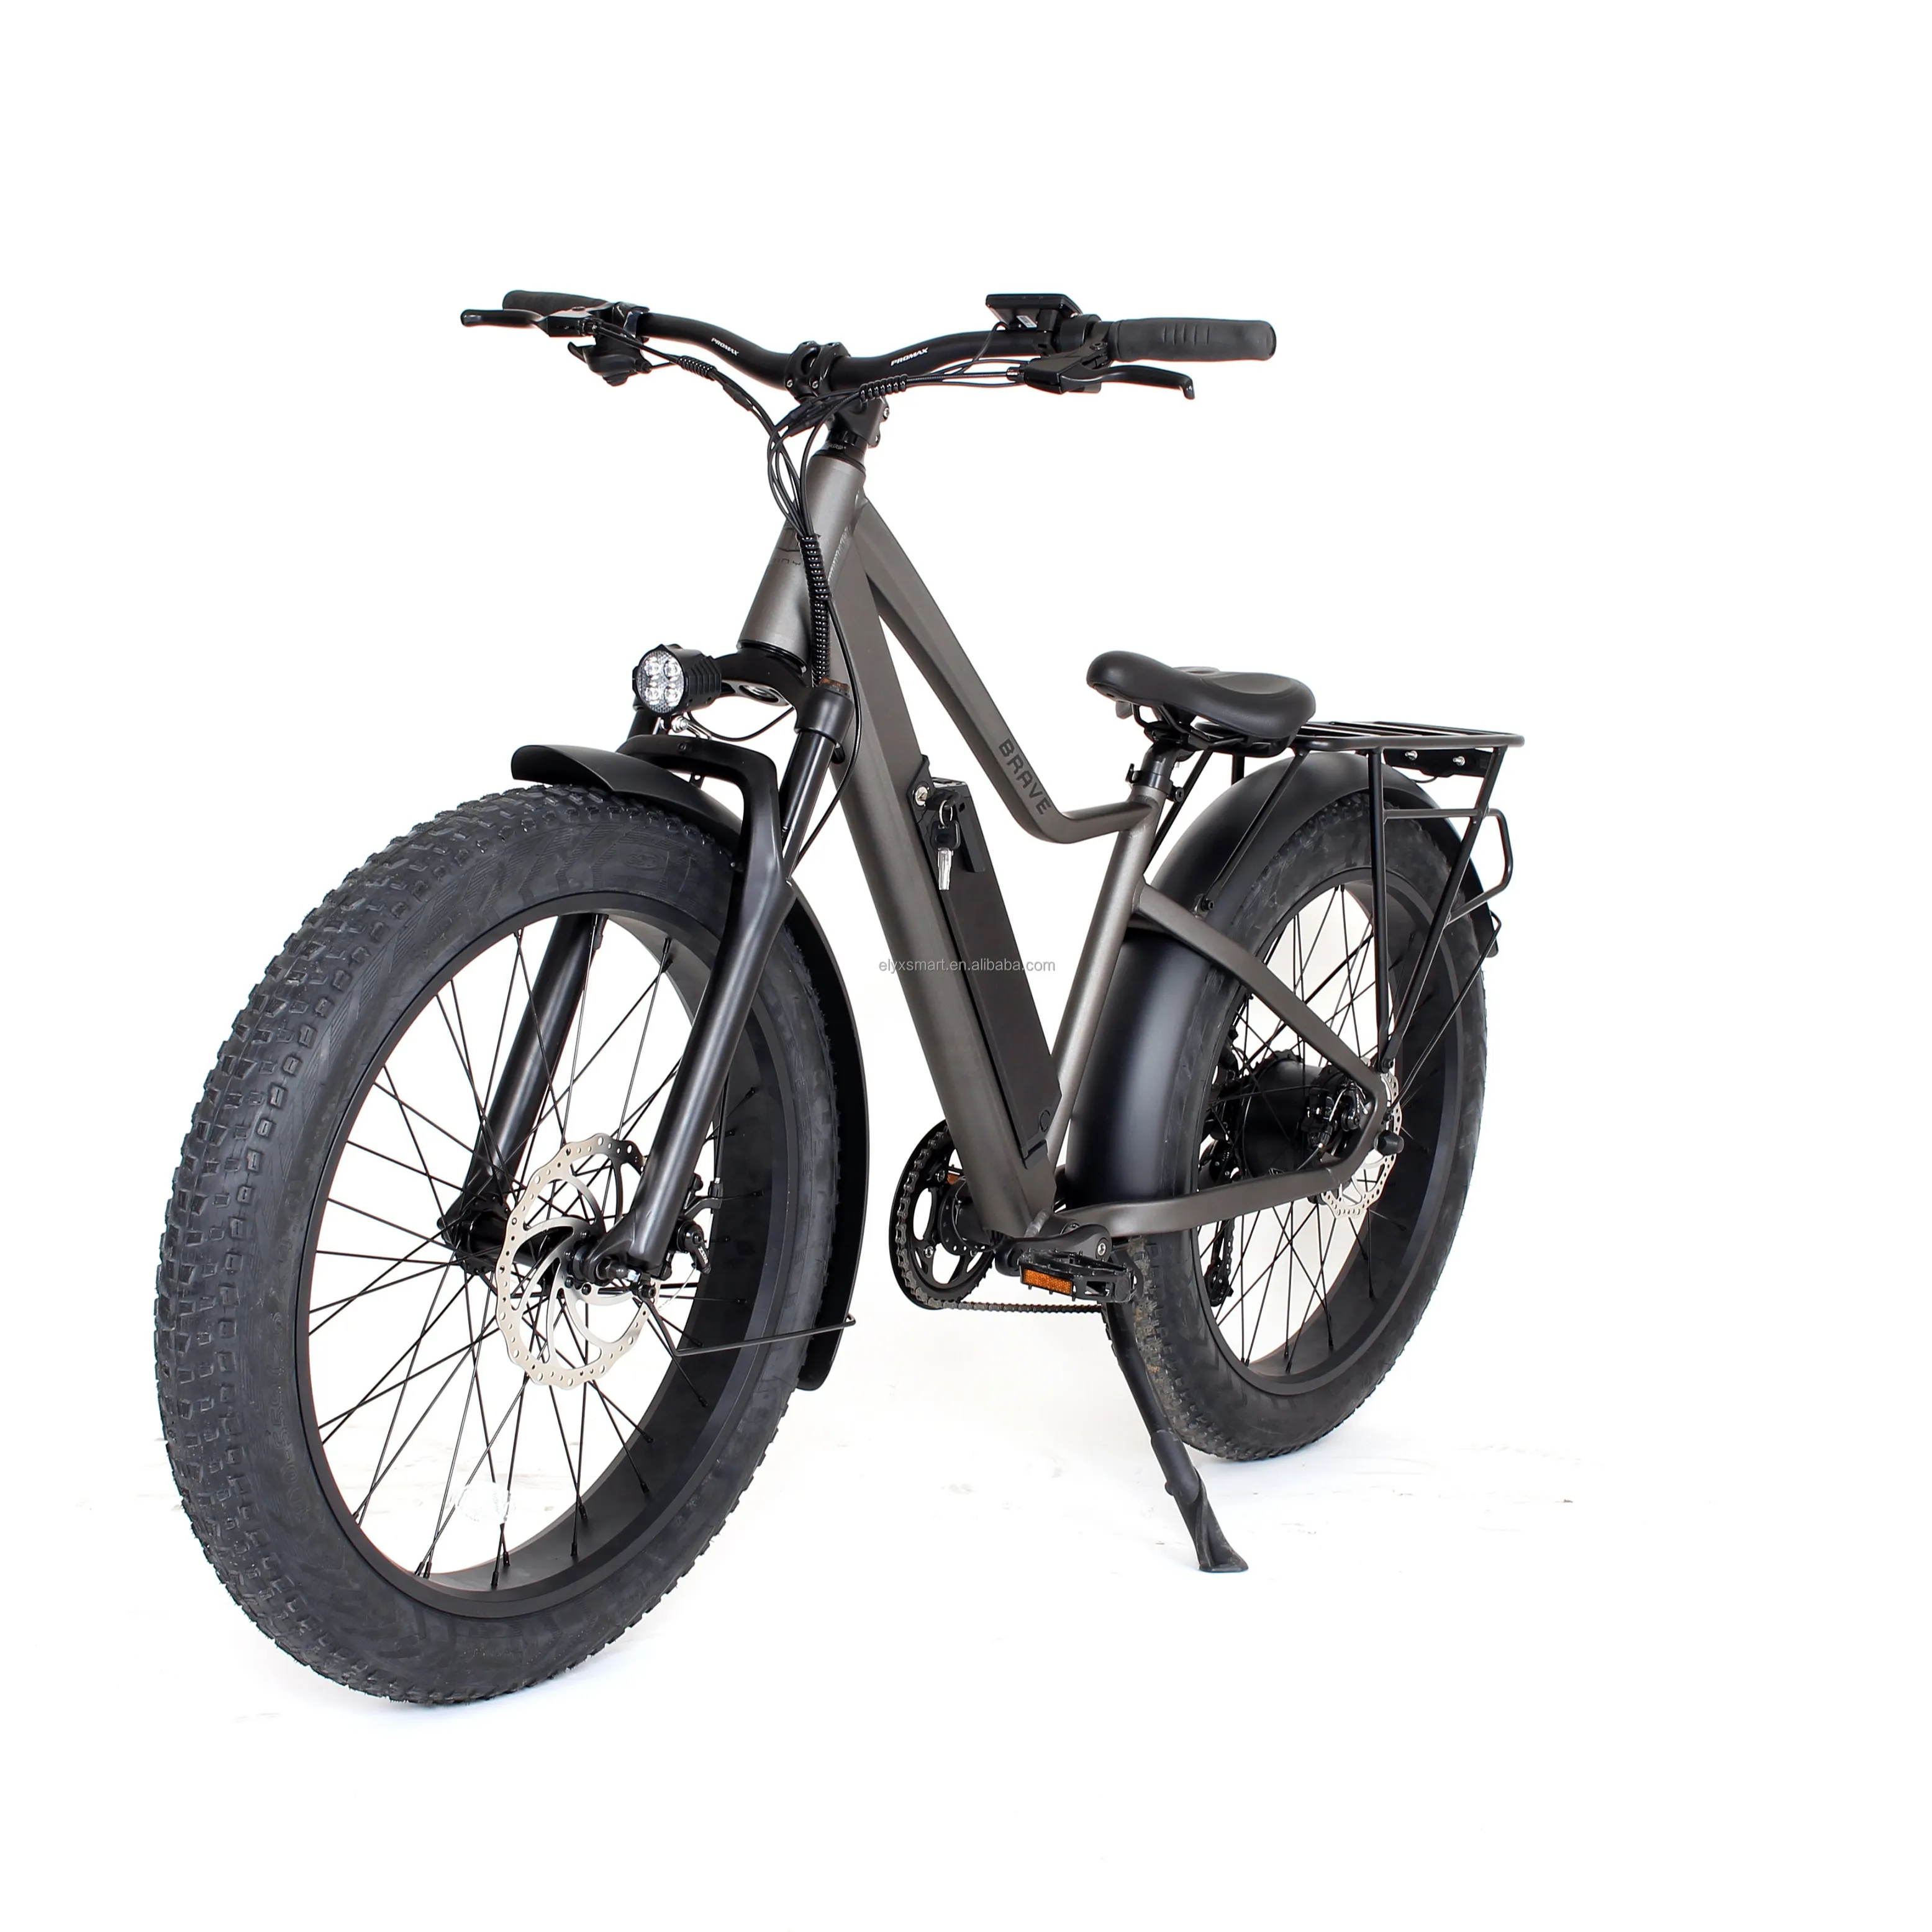 Elyxon Großhandels preis Erwachsene Hybride Bike 7 Geschwindigkeiten Beach Sand 500W Fat Bike 26 Zoll Elektro fahrrad Adult Mountains Bikes